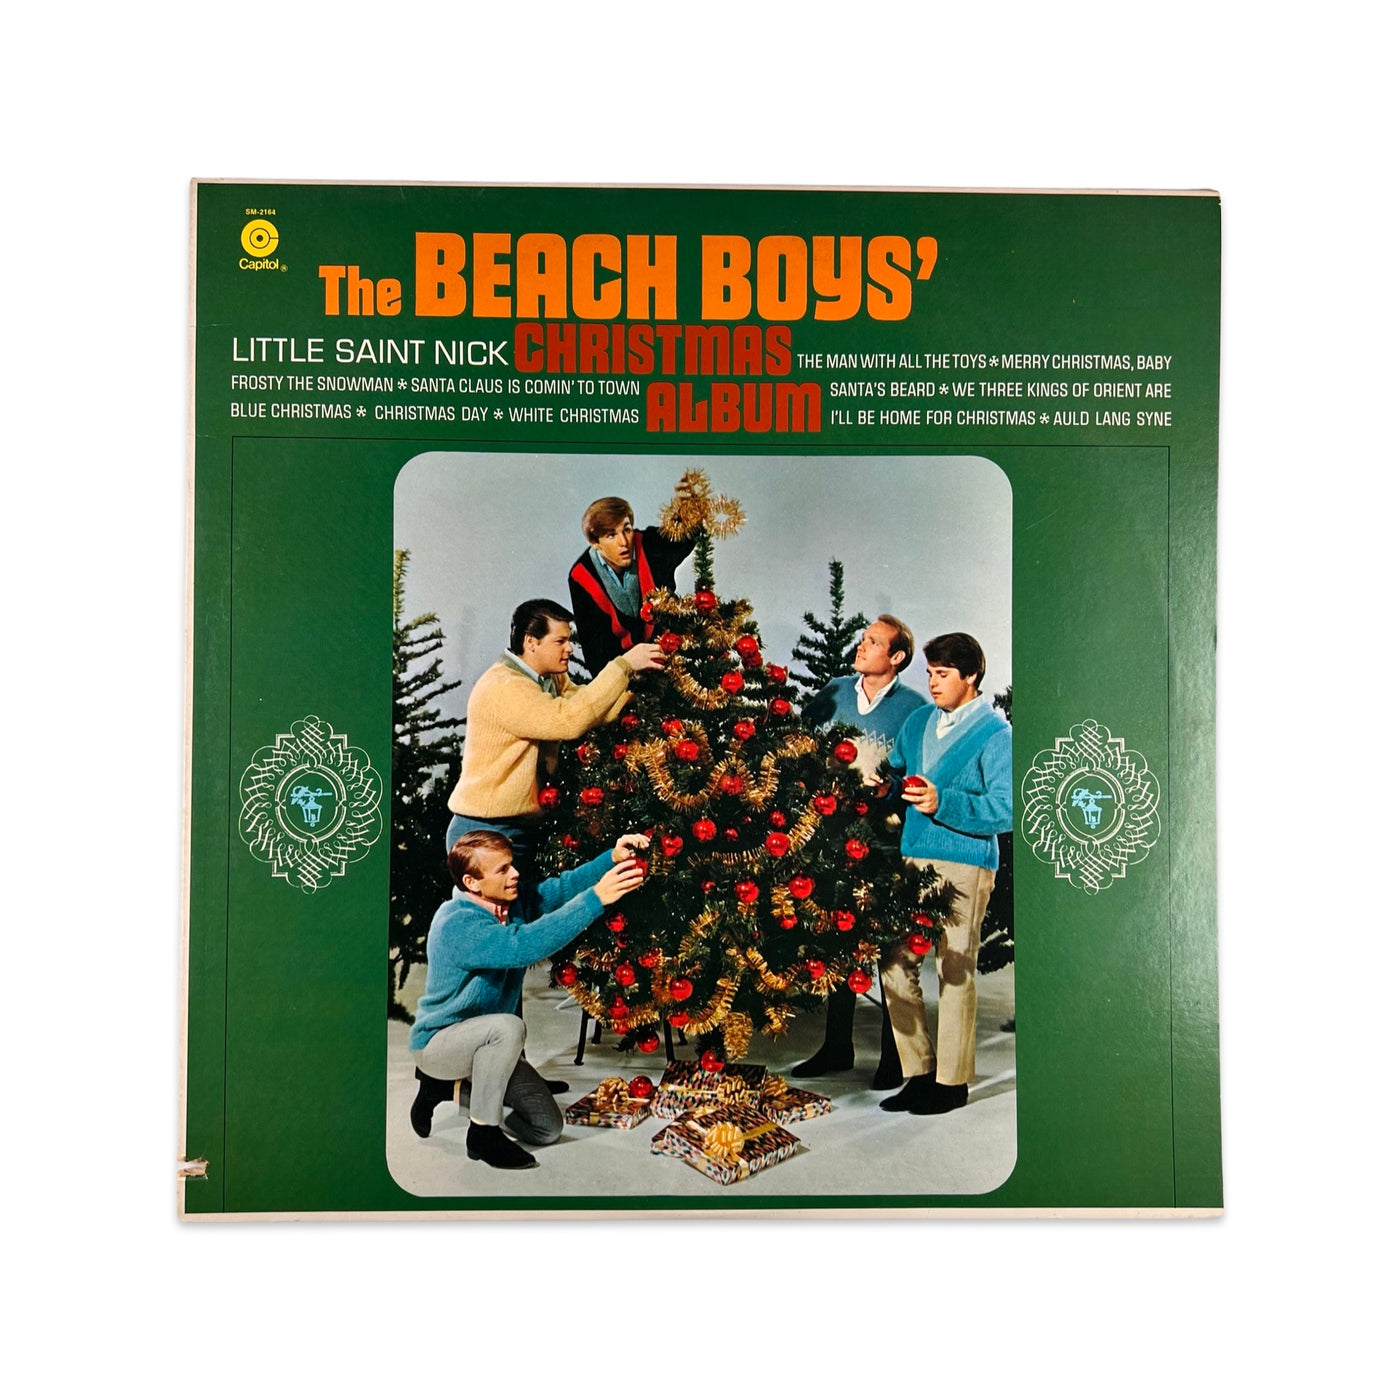 The Beach Boys – The Beach Boys' Christmas Album - 1978 Reissue